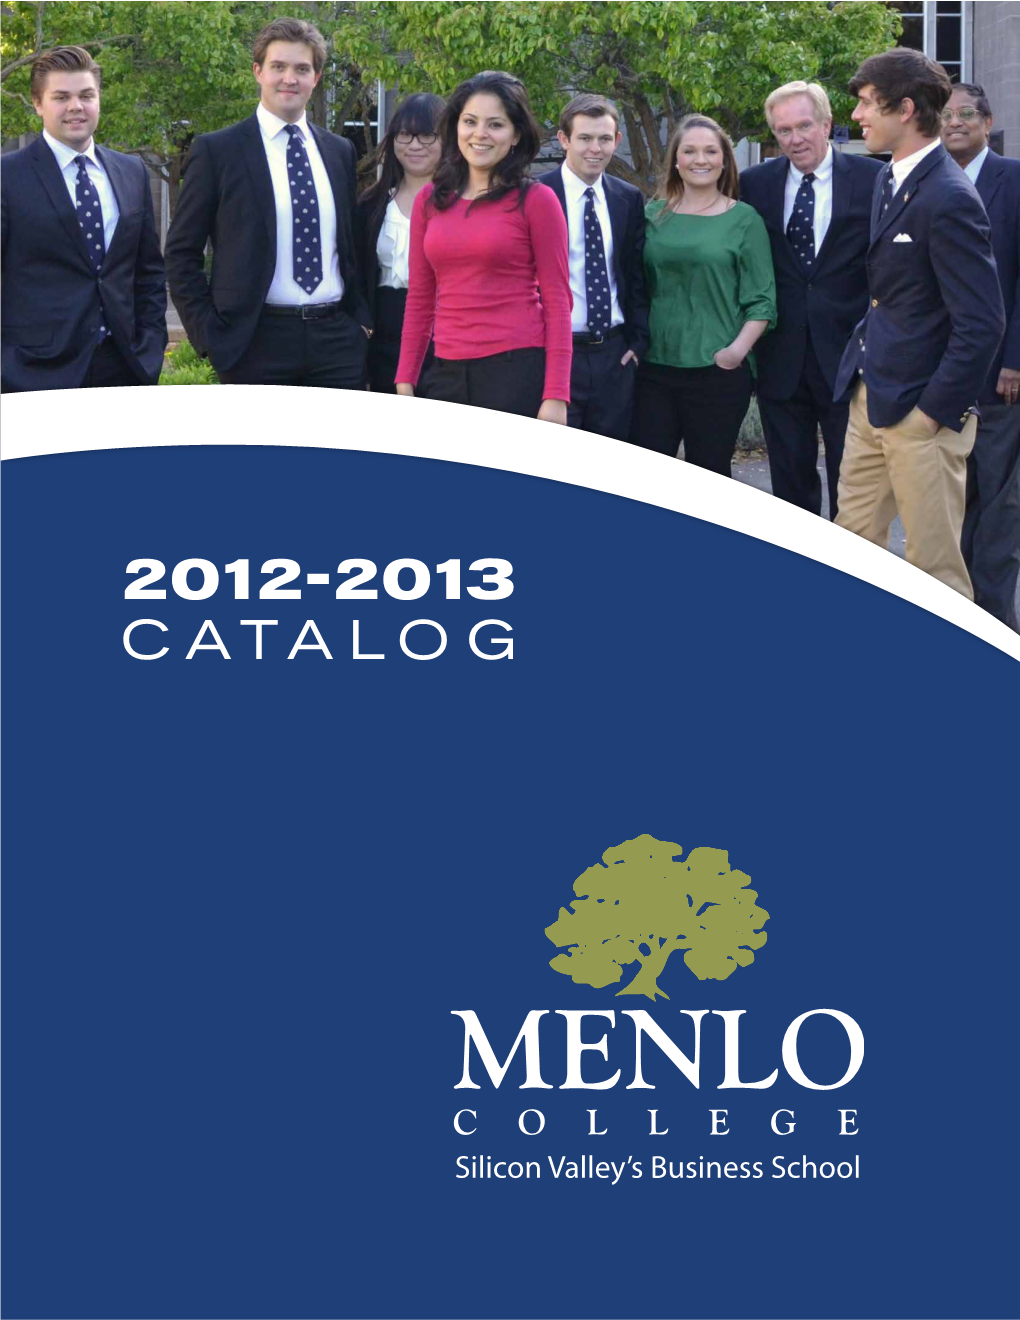 2012-2013 Catalo G